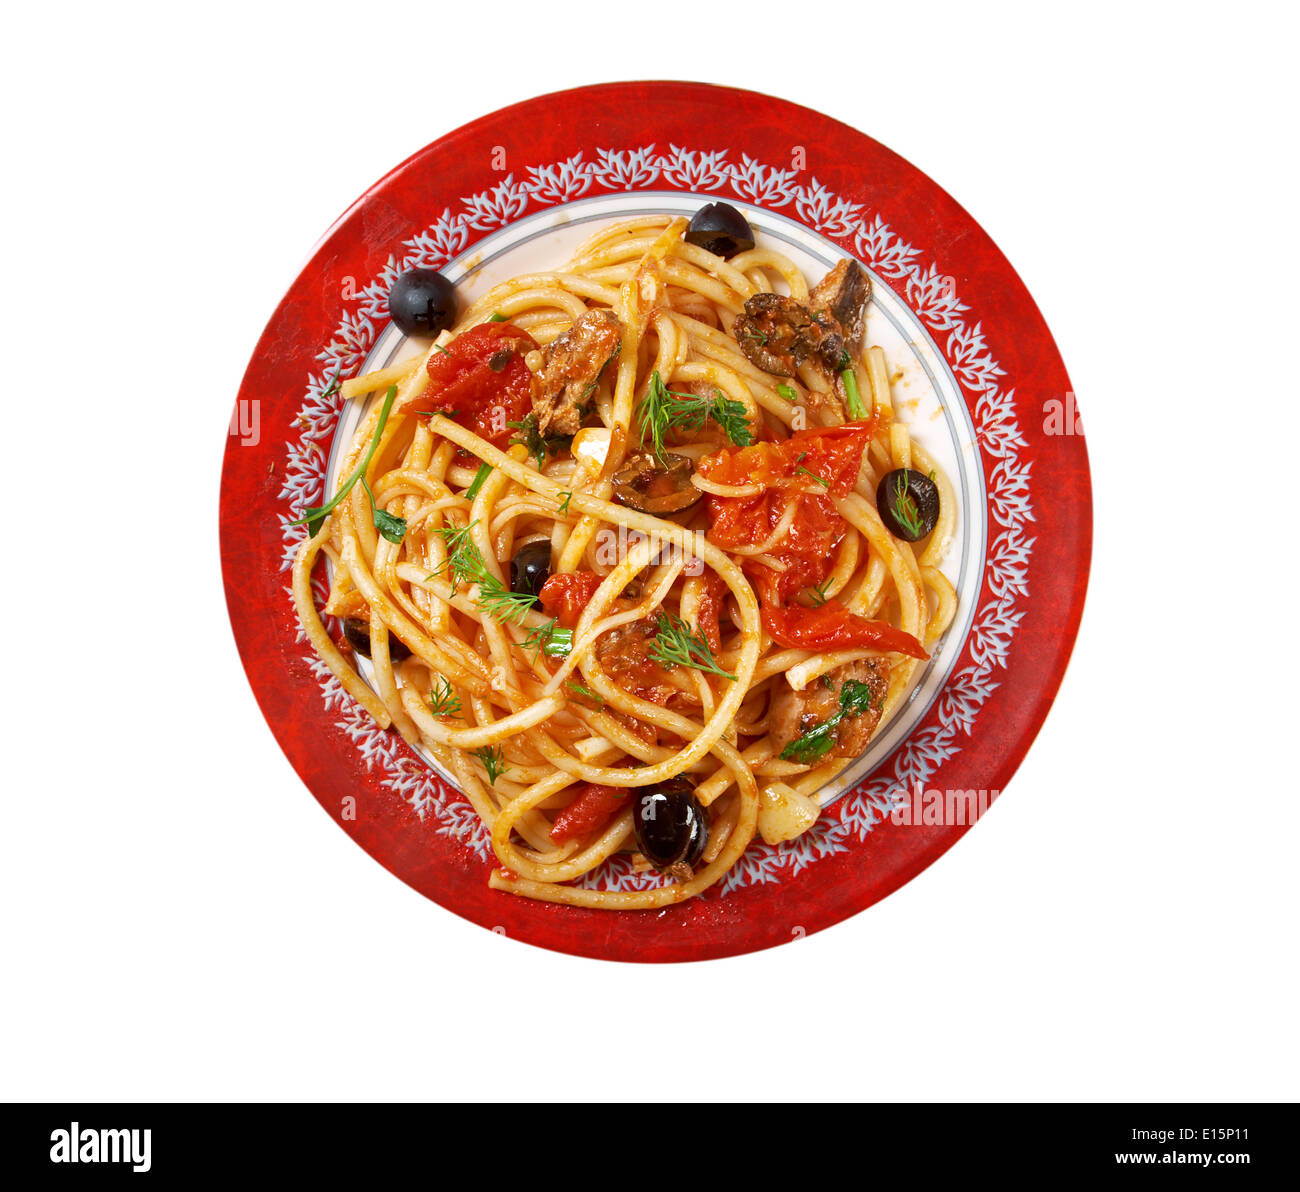 Spaghetti alla puttanesca Stock Photo